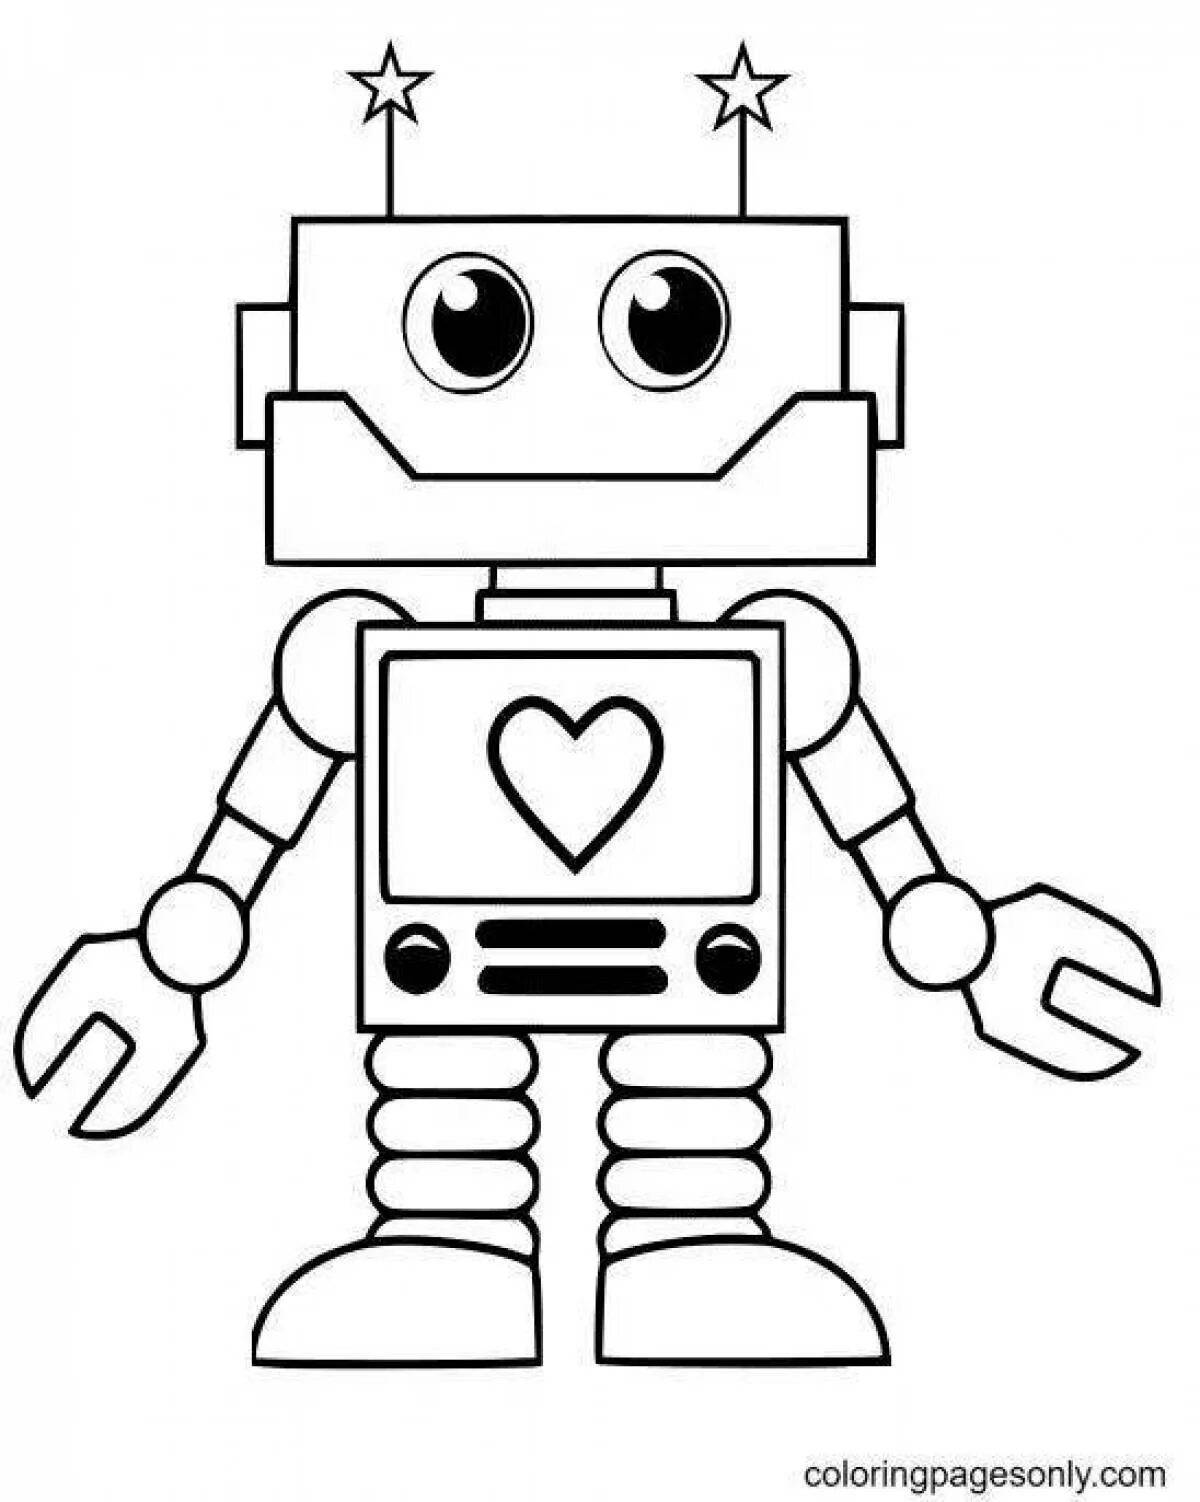 Раскраска робота 3. Раскраски. Роботы. Робот рисунок. Робот раскраска для детей. Робот разукрашка для детей.